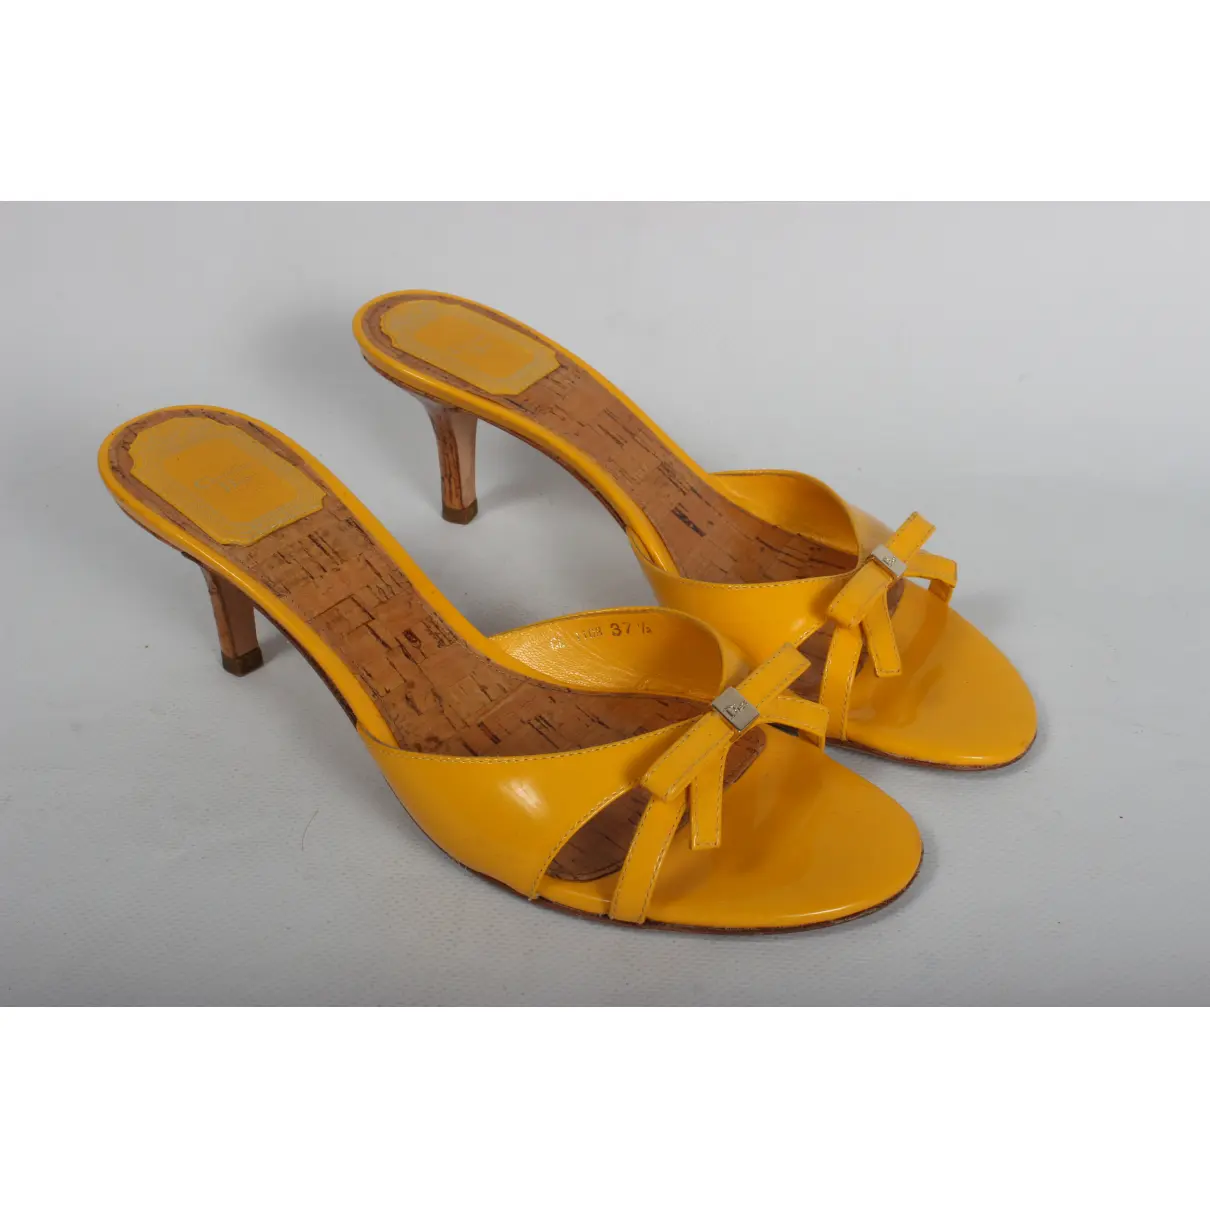 Buy Dior Patent leather sandal online - Vintage